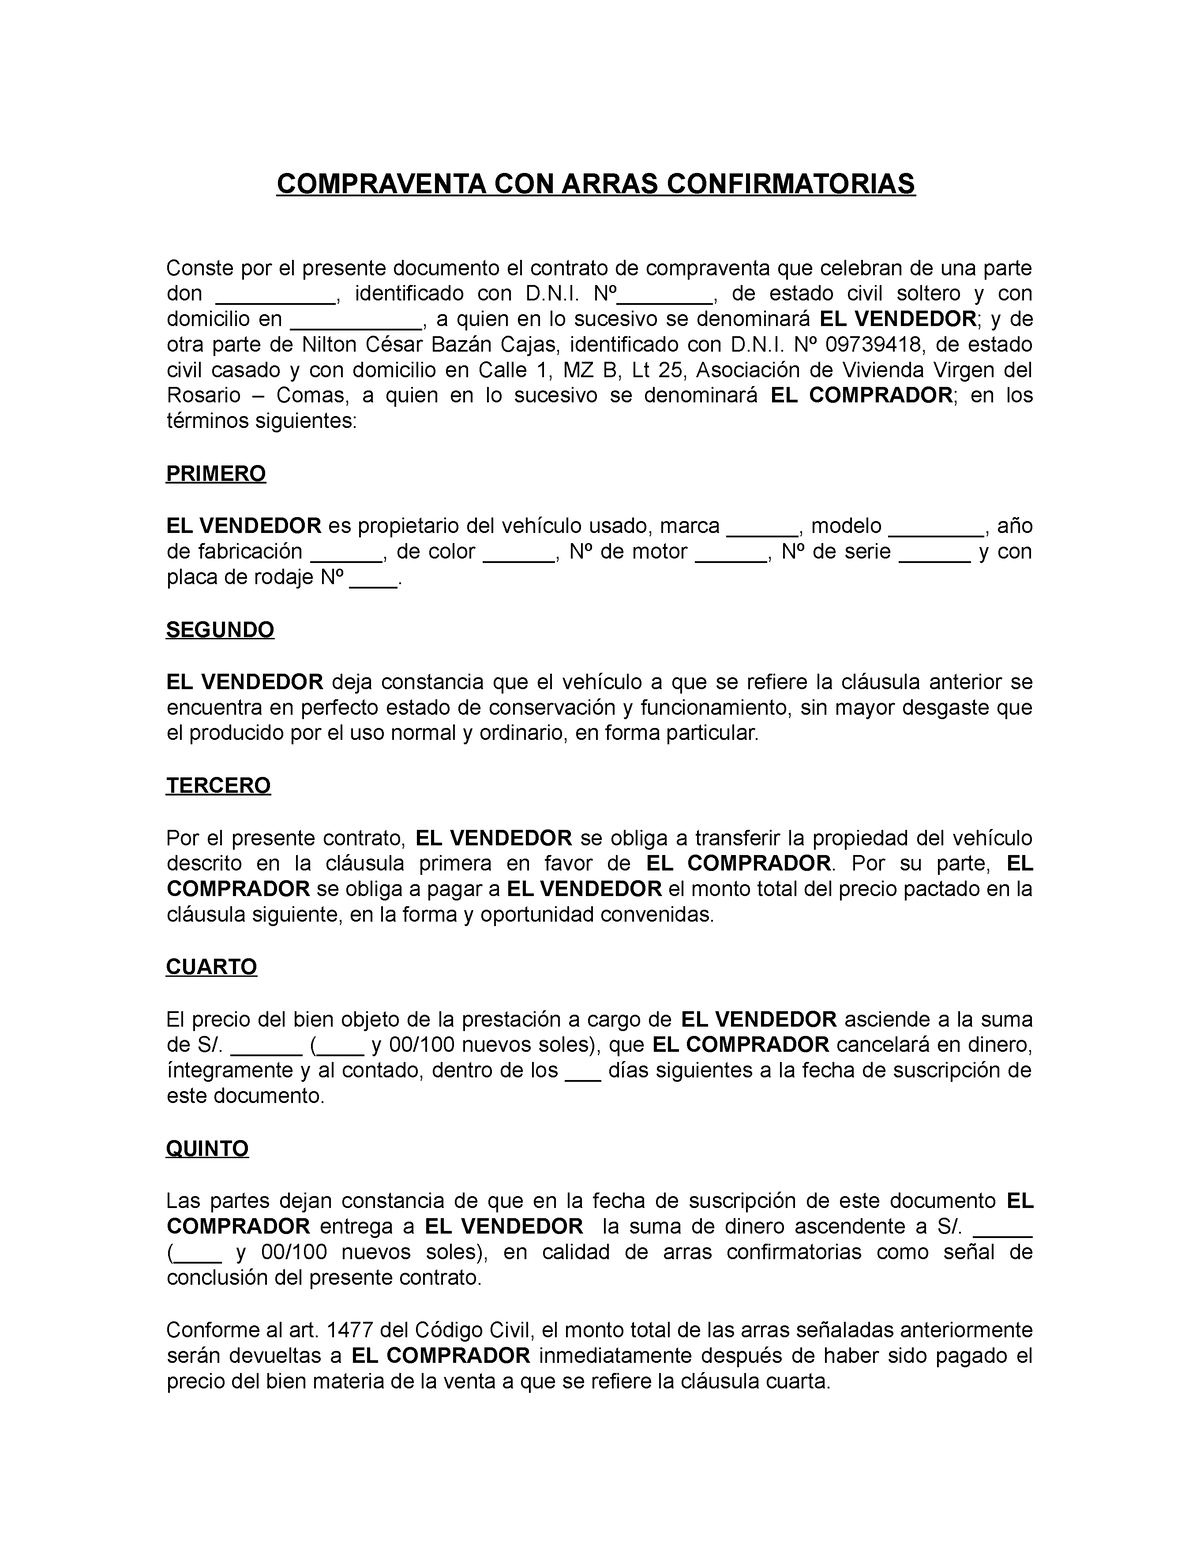 Contrato De Compra Venta Con Arras Confirmatorias Compraventa Con Arras Confirmatorias Conste 8879